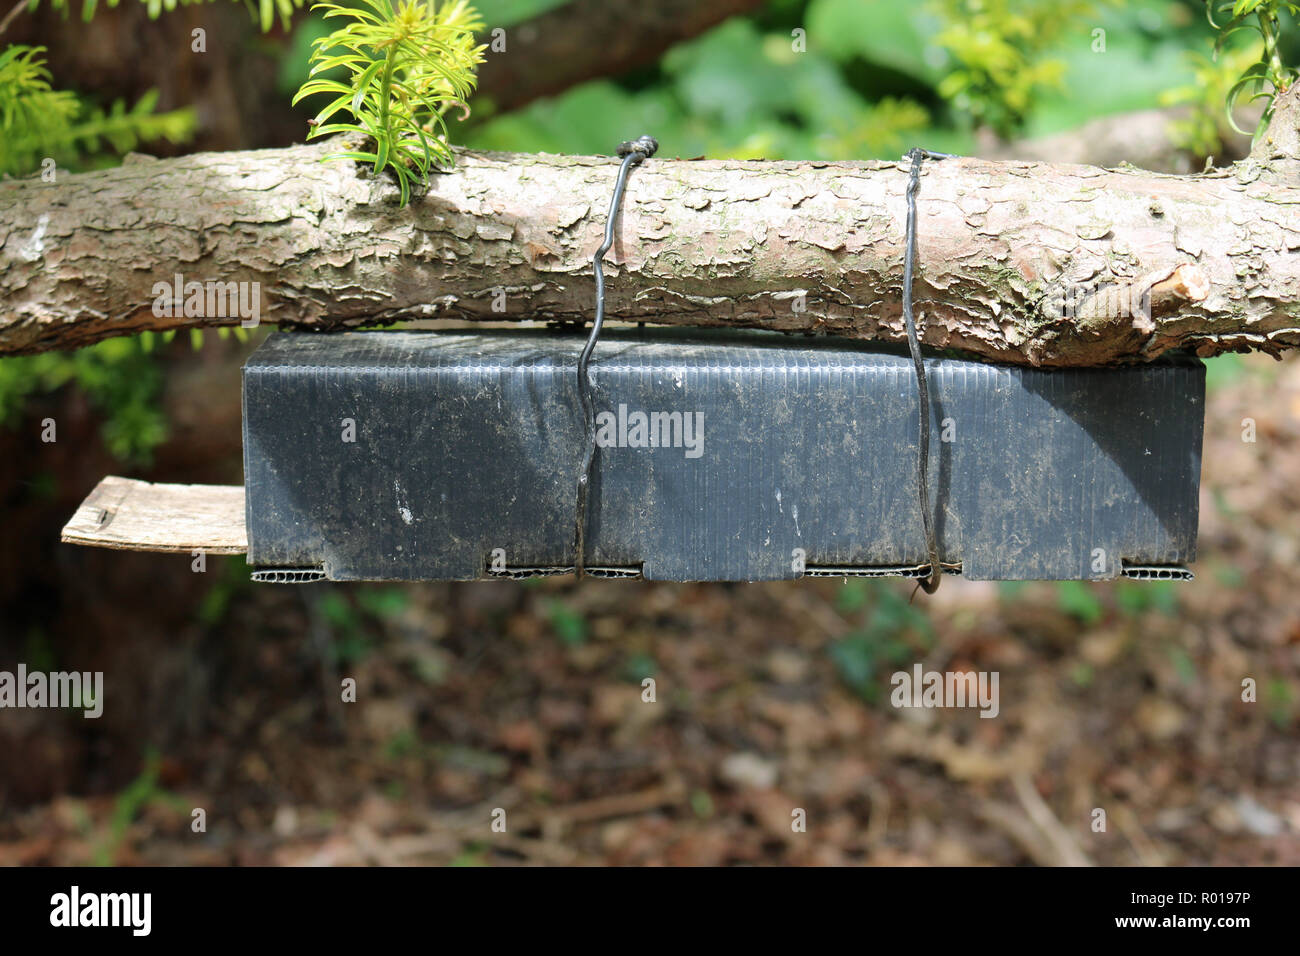 Aus schwarzem Kunststoff und Holz Haselmaus (Muscardinus avellanarius) Nest tube Umfrage Feld unter einem Baum mit Draht befestigt. Stockfoto